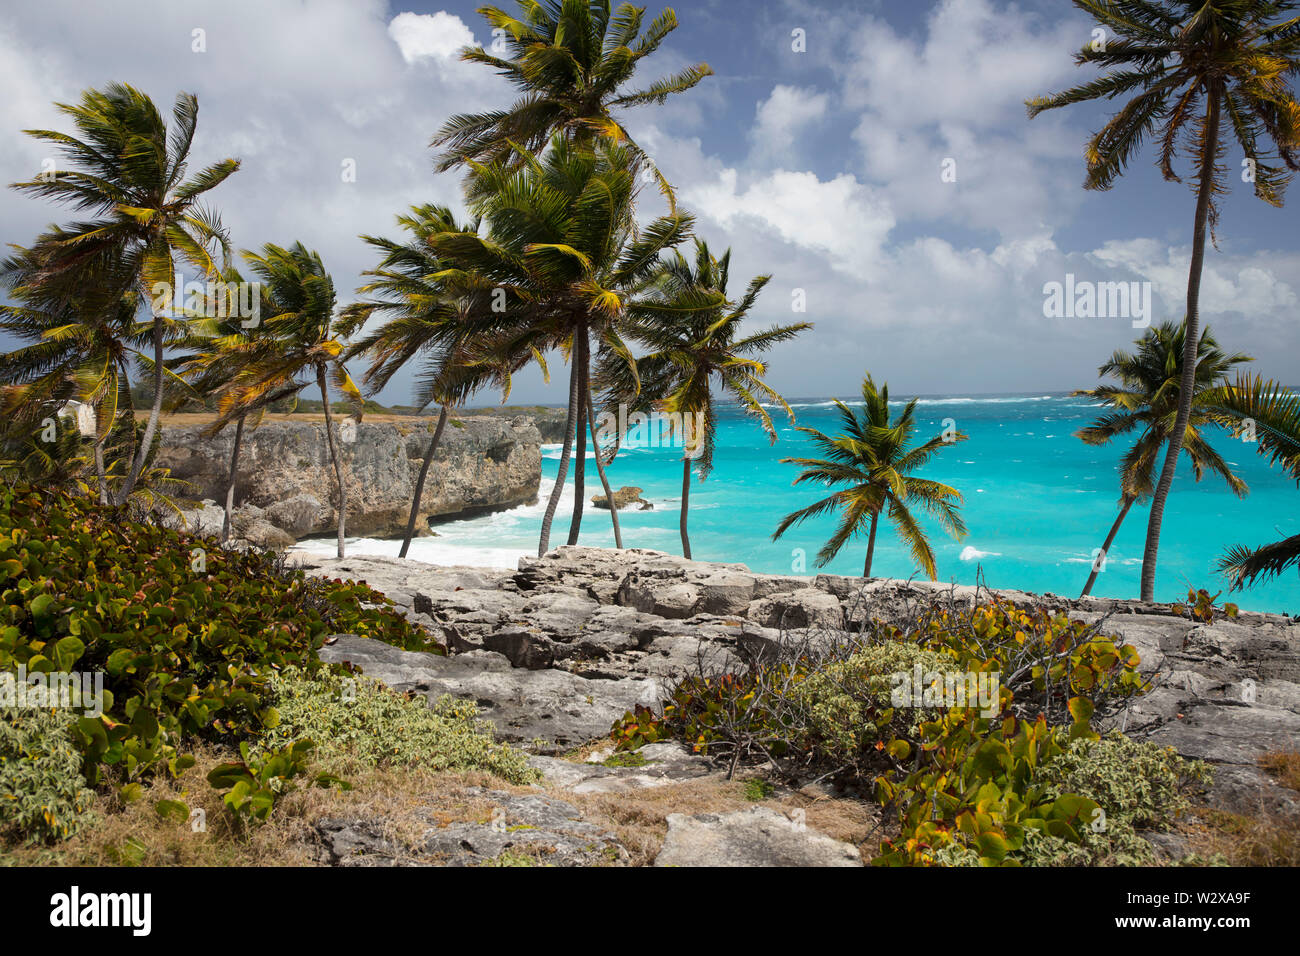 Verano en la isla de Barbados. Vacaciones exóticas. Las palmeras. Agua de color turquesa. Soleado cielo azul. Hermosa playa de arenas blancas. Foto de stock